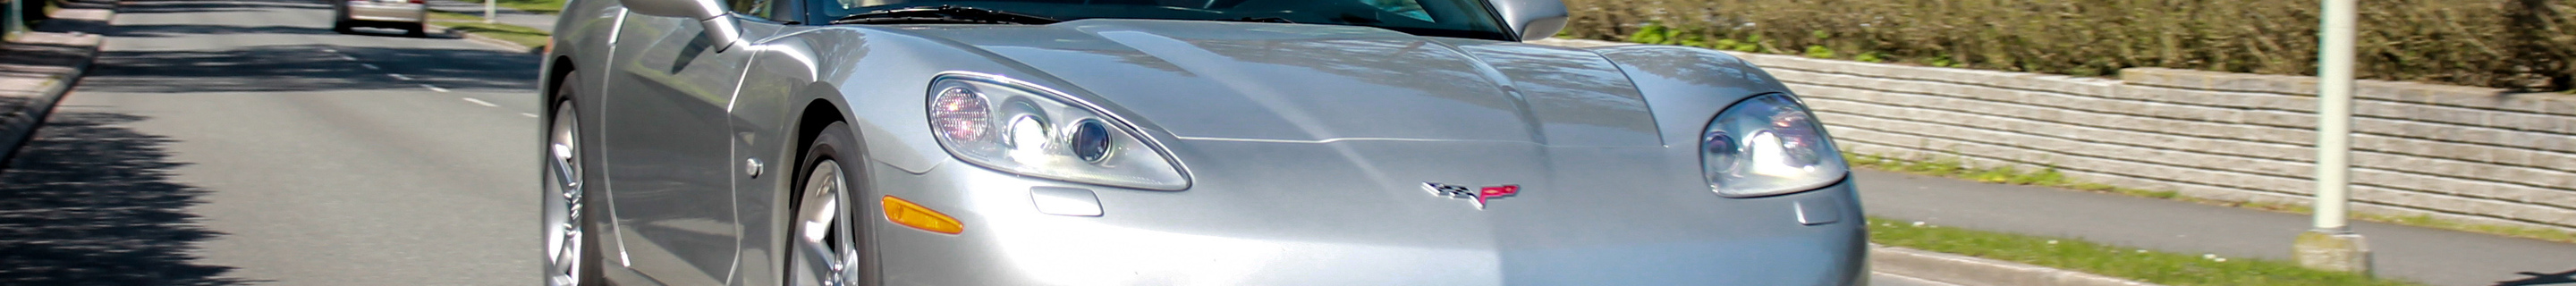 Chevrolet Corvette C6